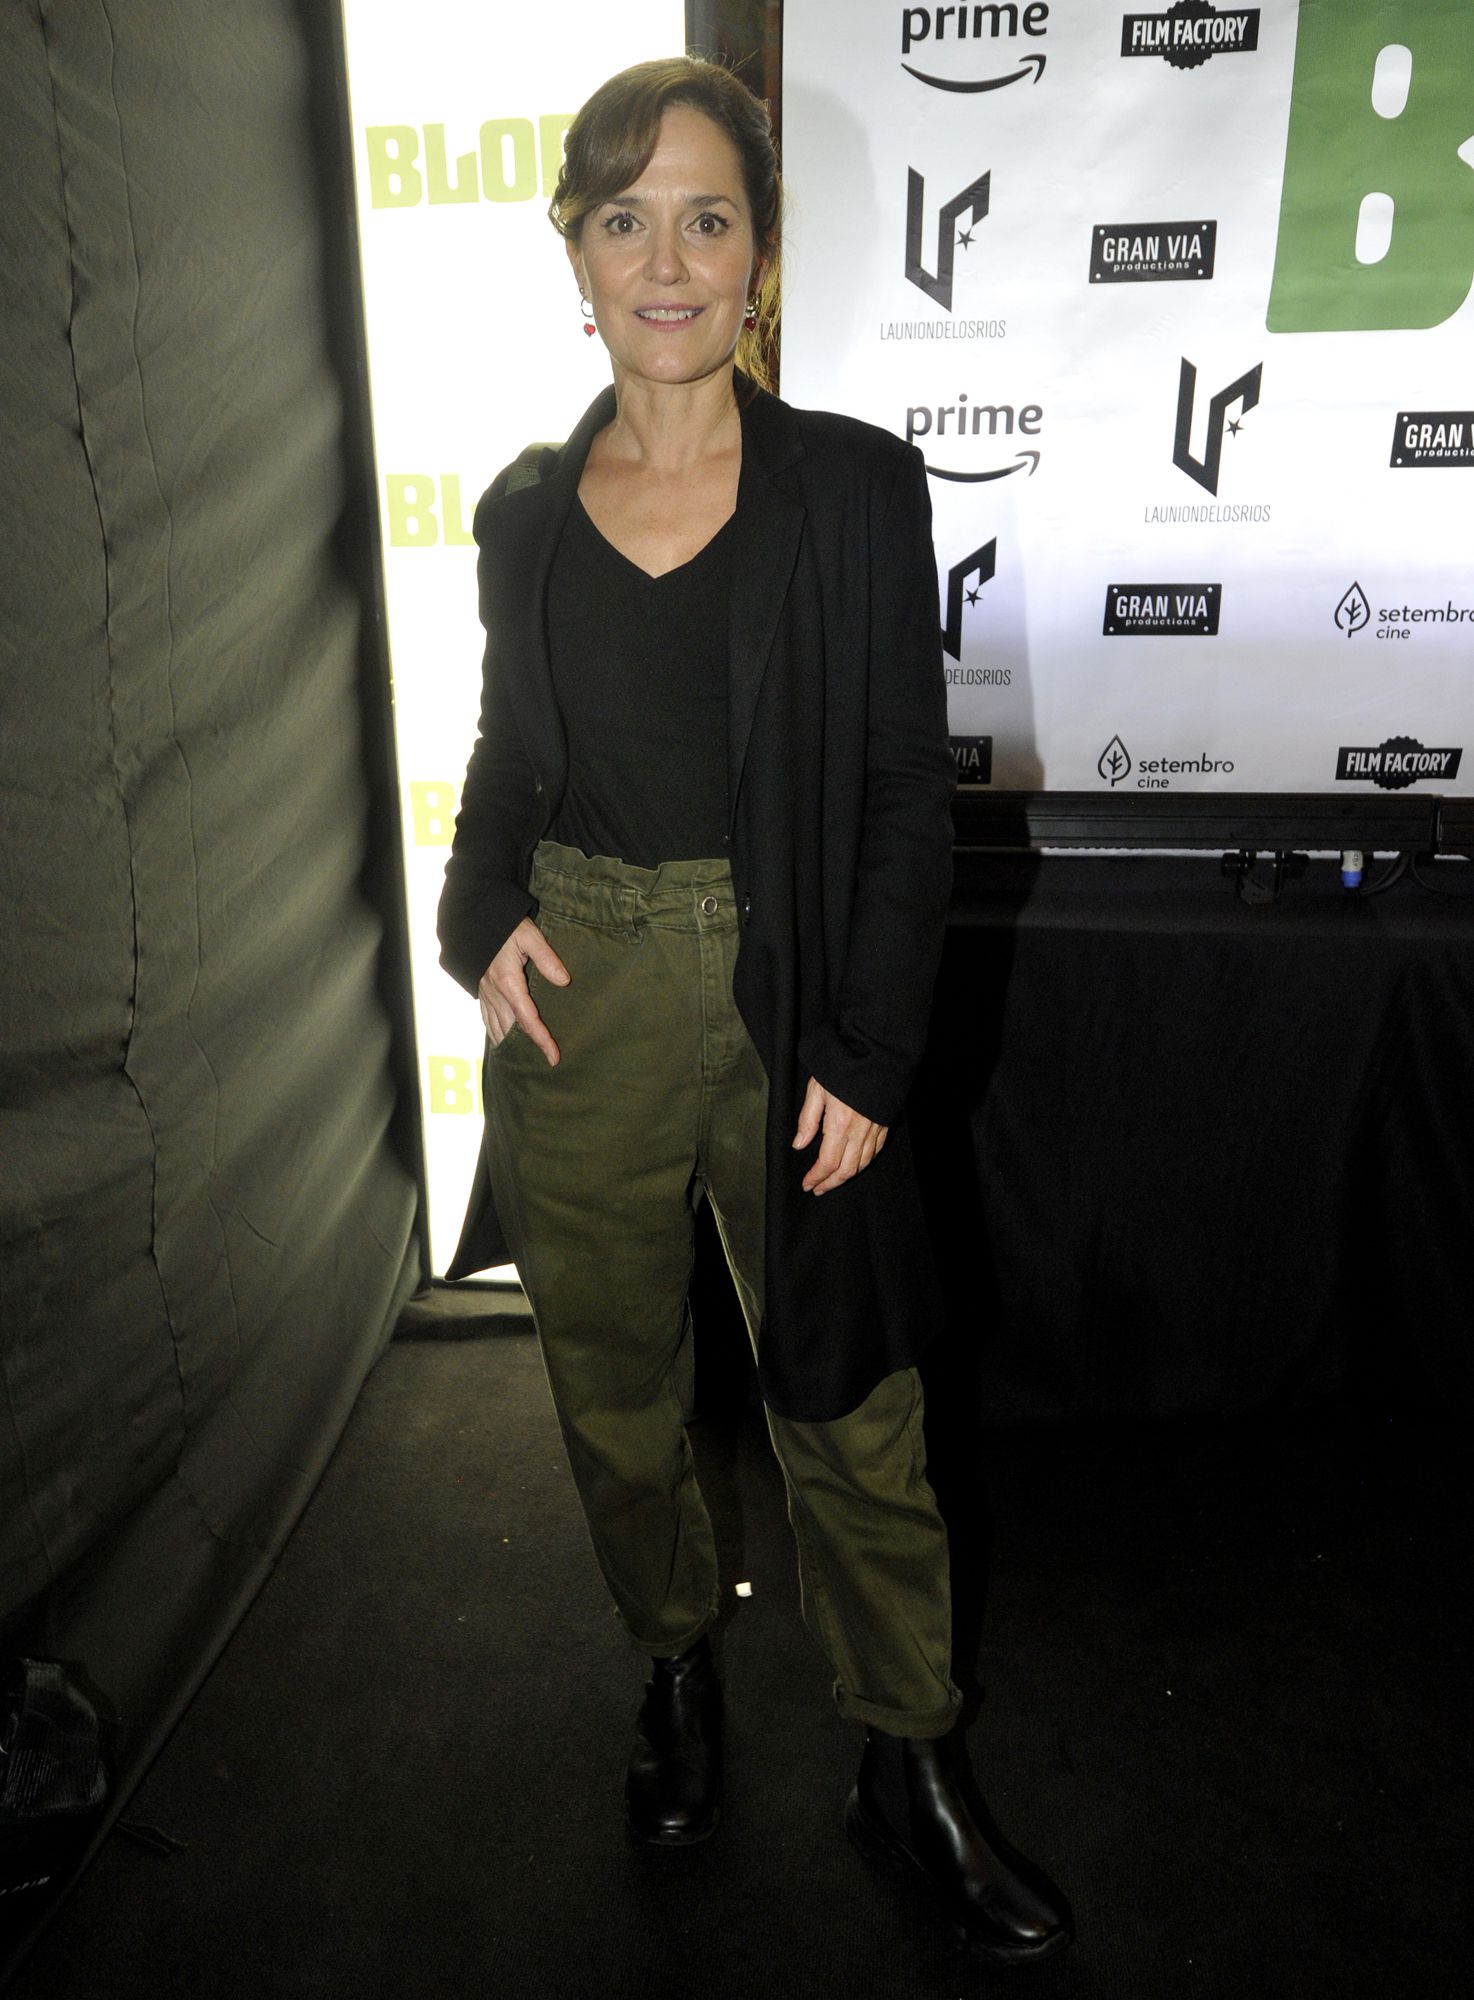 Un pantalón en verde musgo fue el gran protagonista del look de Andrea Pietra